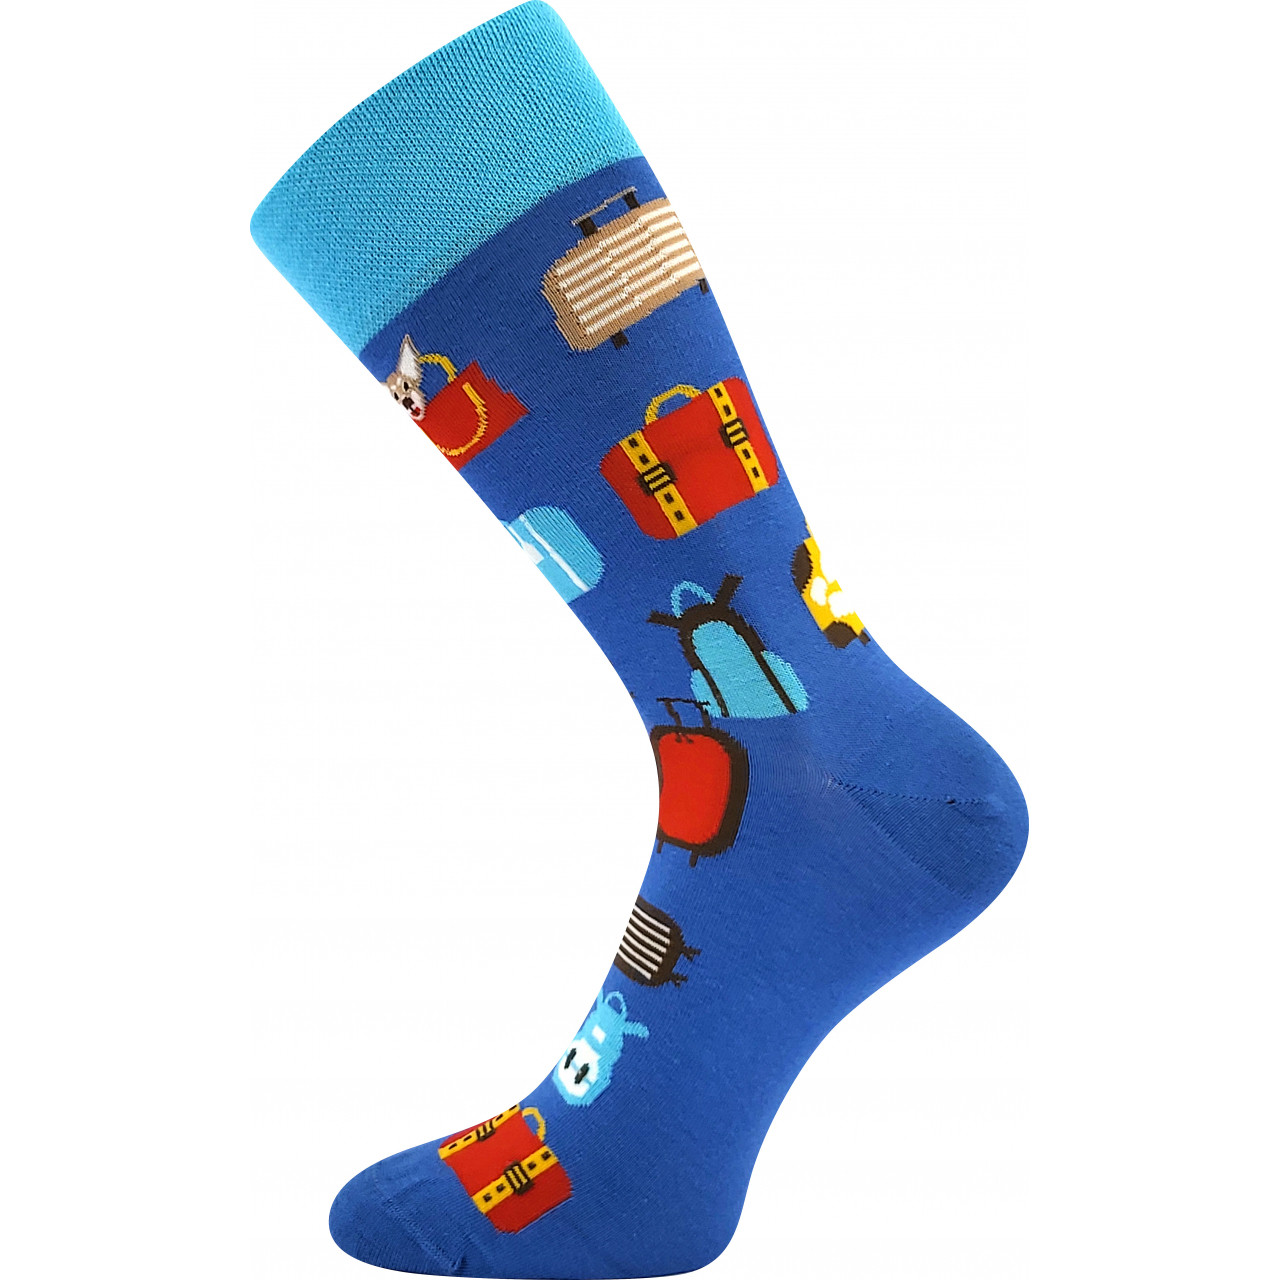 Ponožky společenské unisex Lonka Twidor Kufry - modré, 43-46